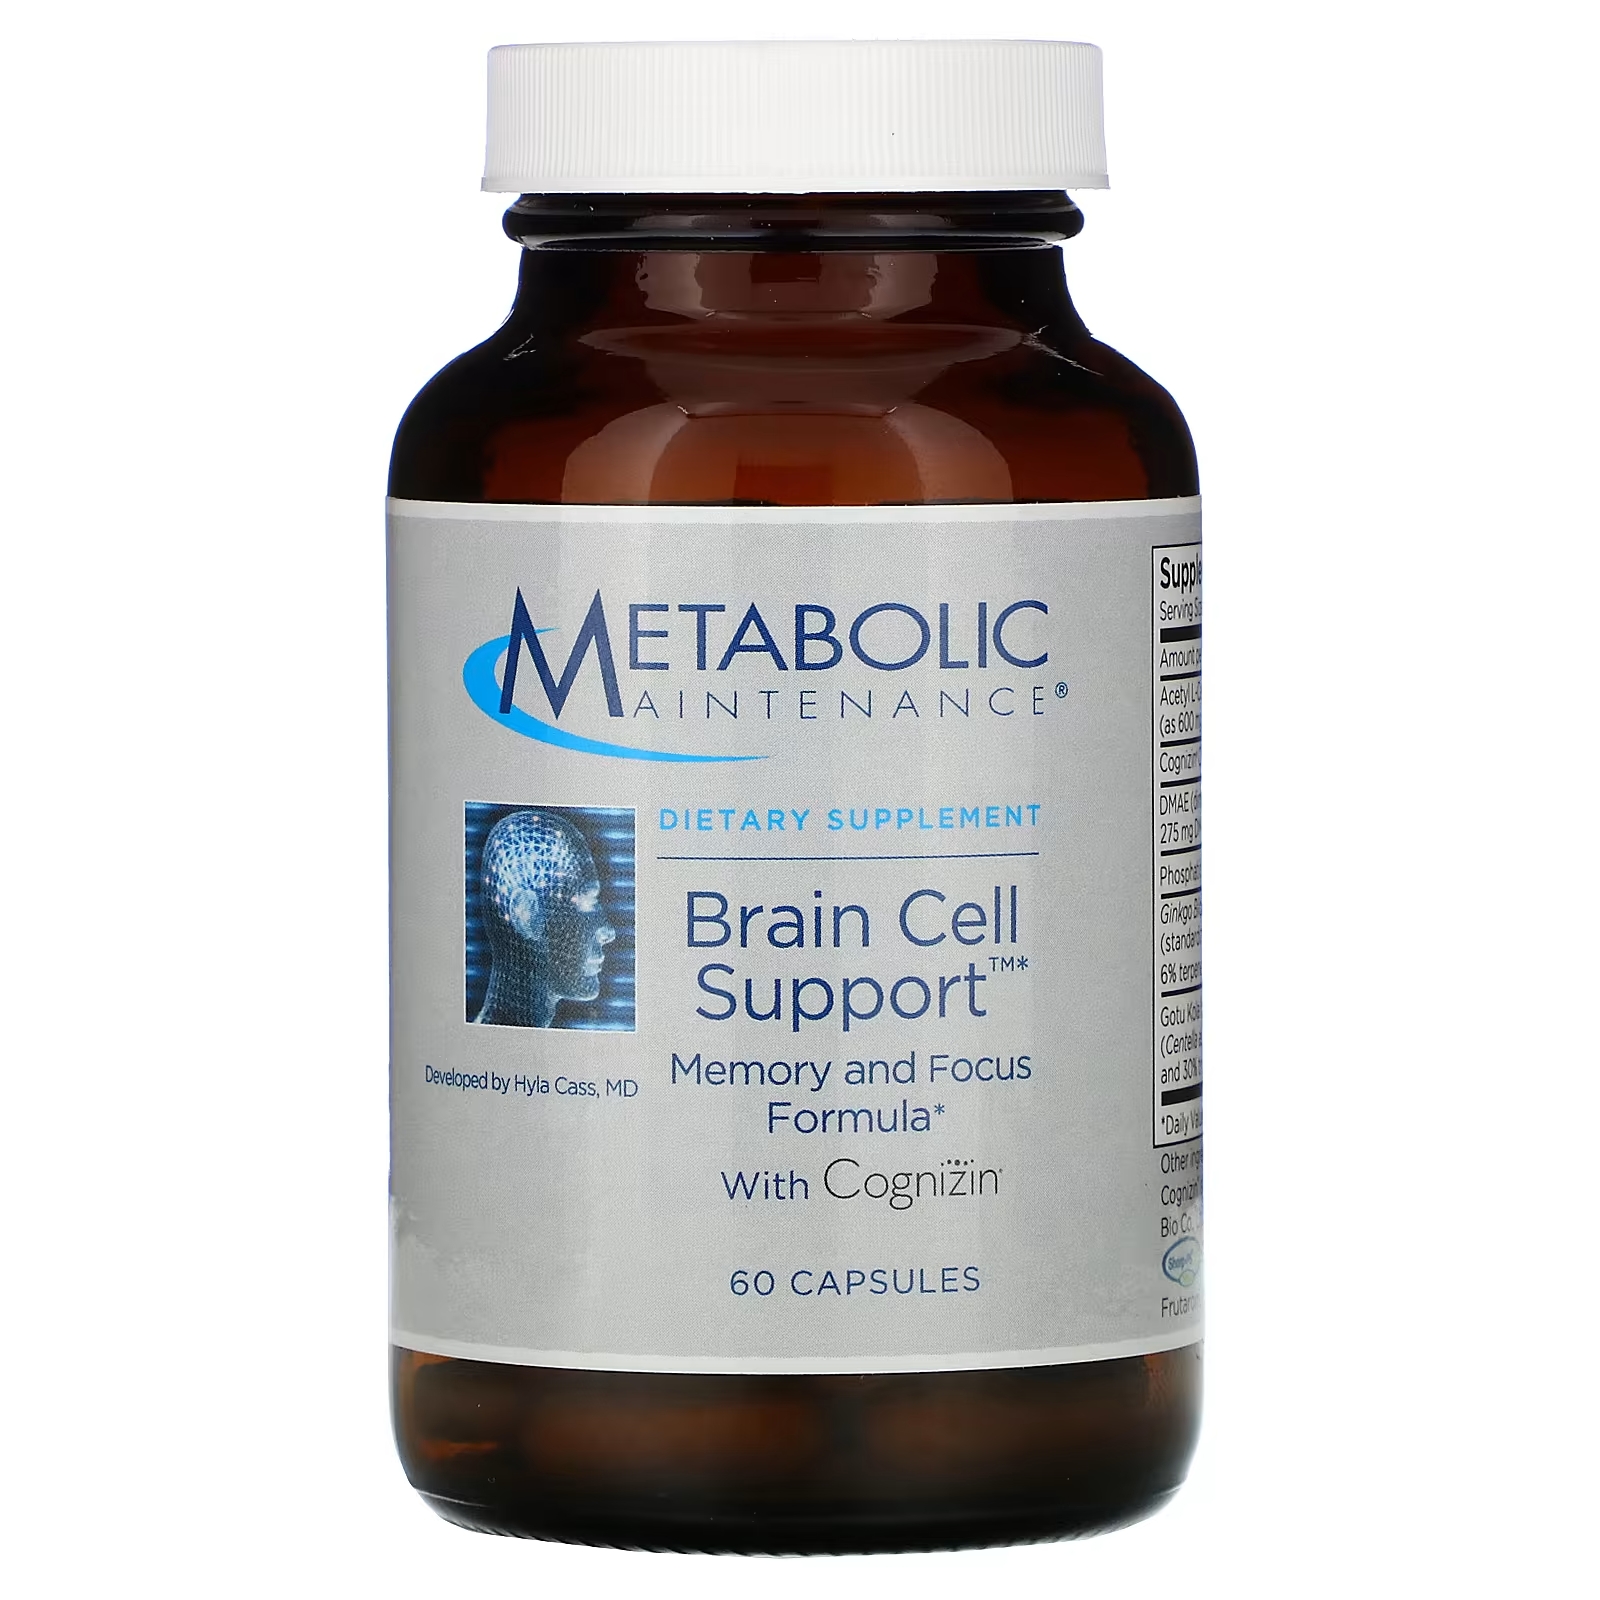 Metabolic Maintenance Поддержка клеток мозга с Cognizin, 60 капсул